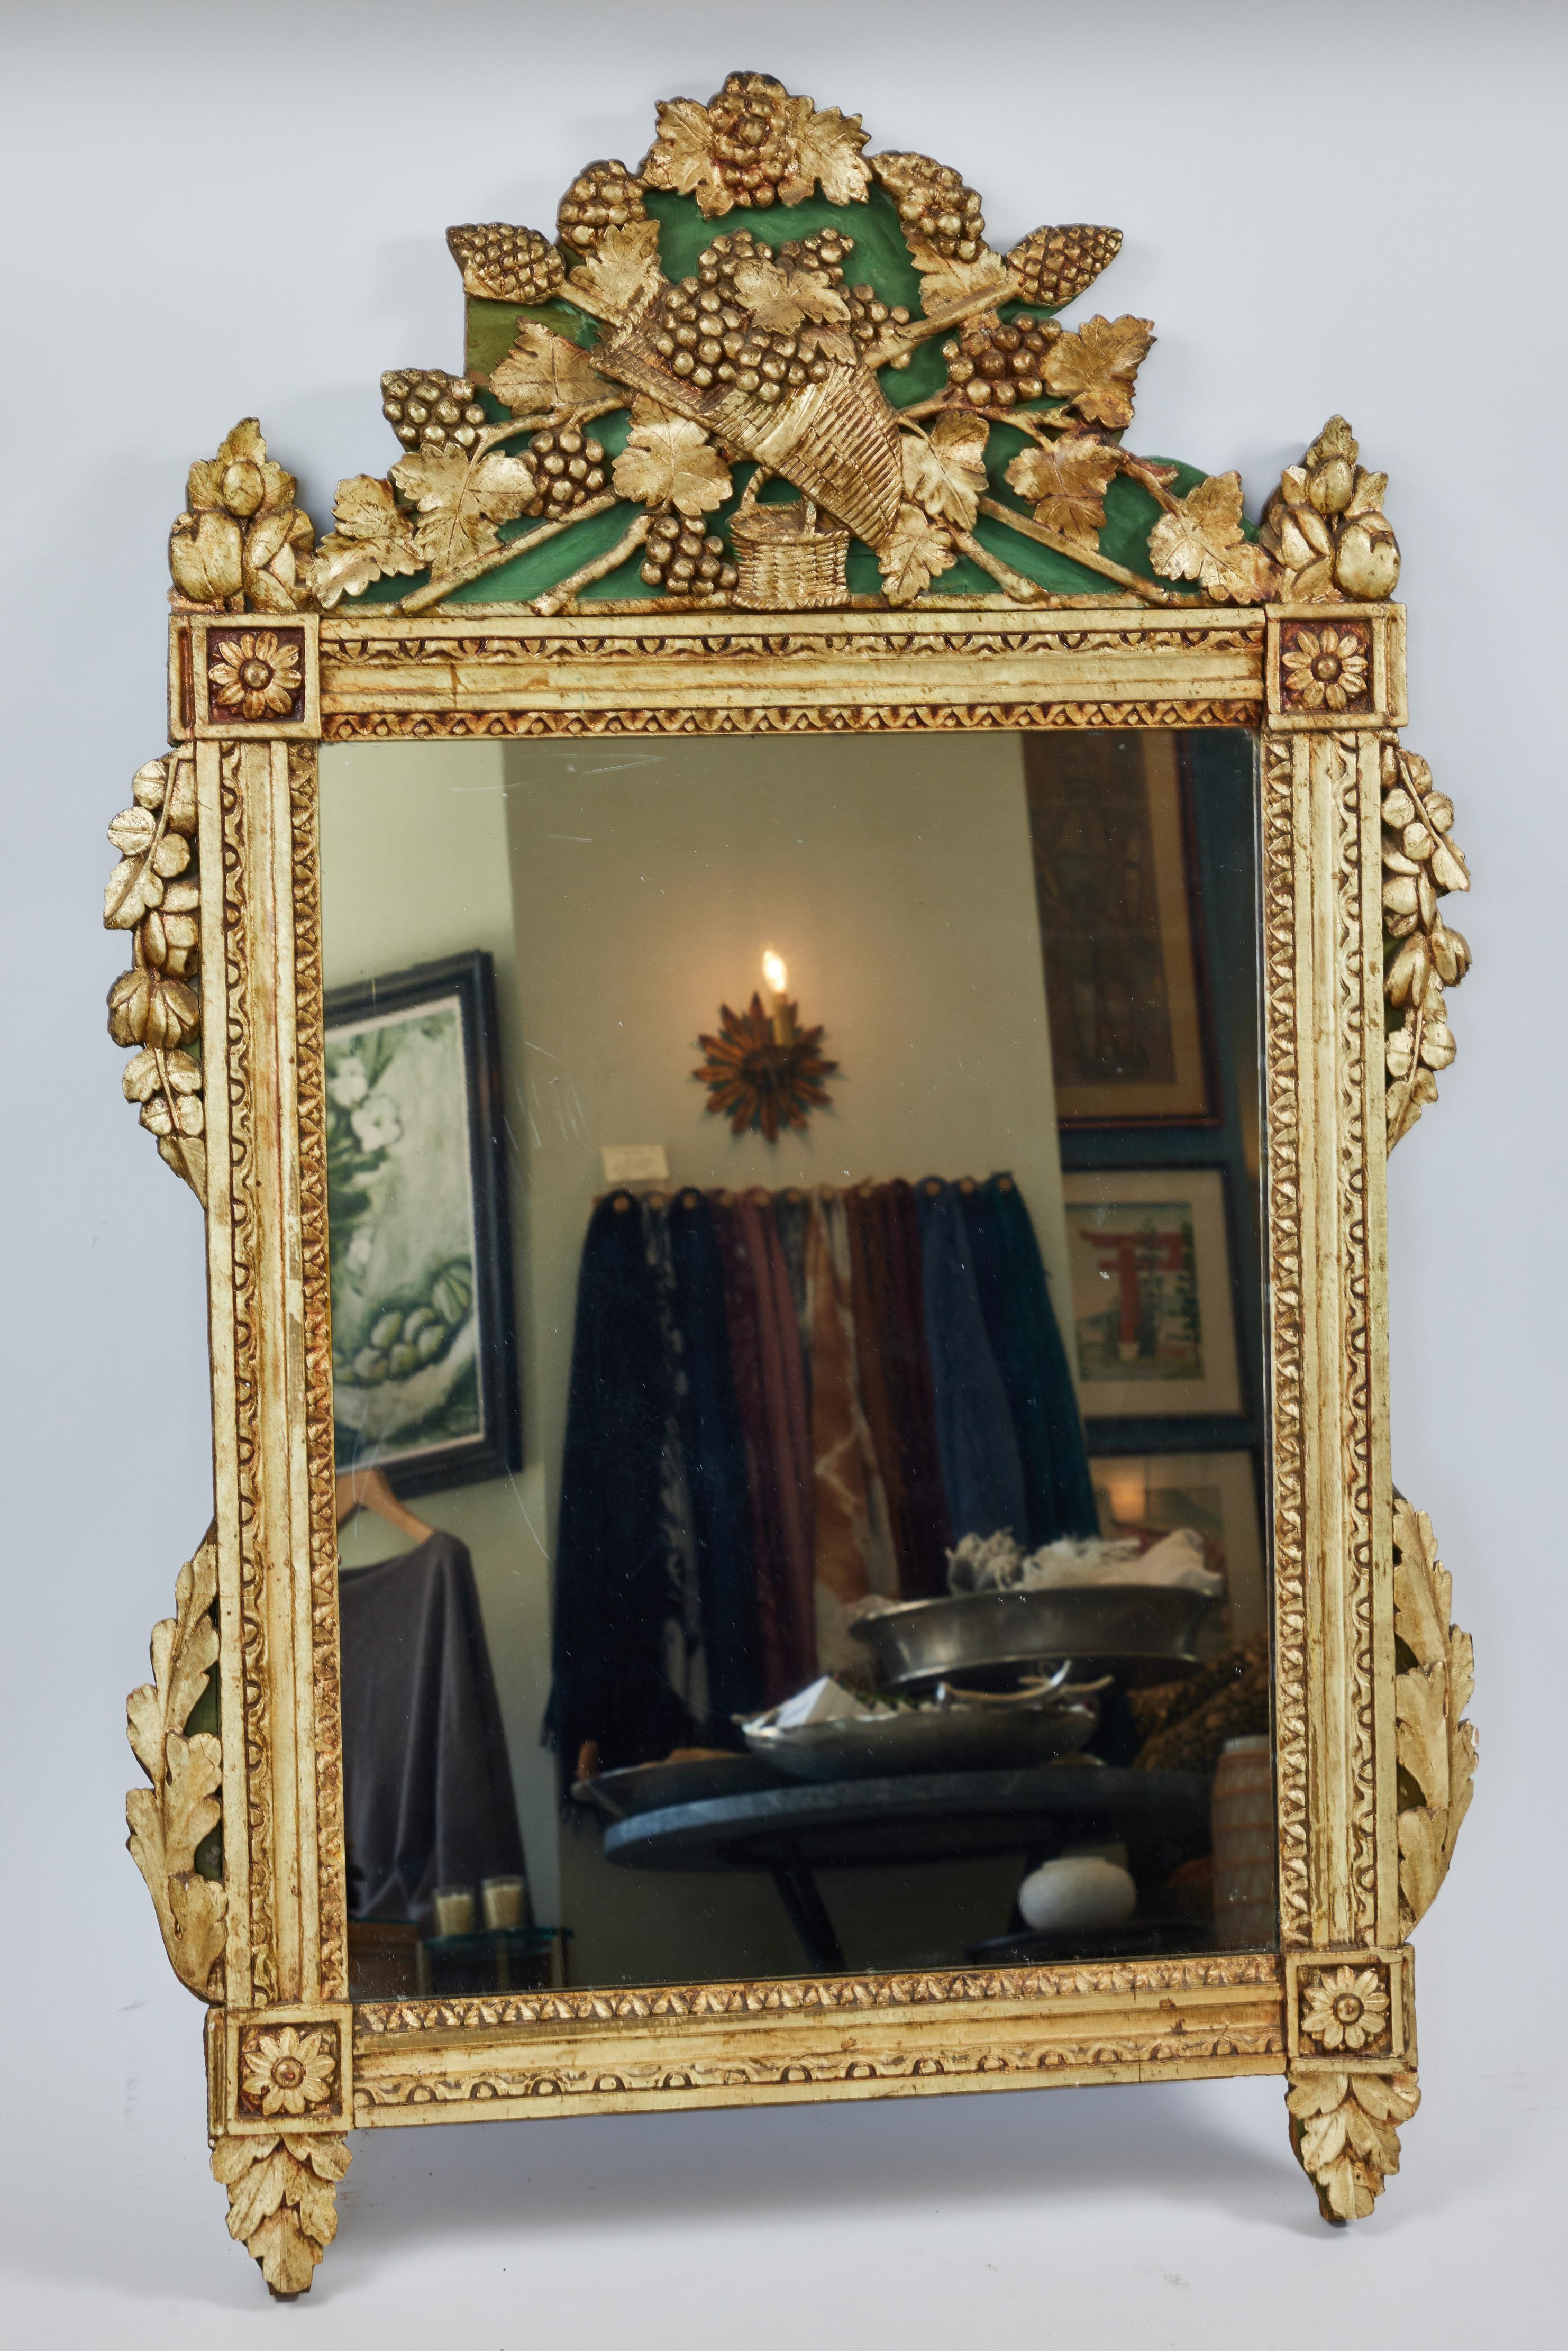 Miroir ancien en bois sculpté à la main, finition dorée d'origine

Elle présente un panier décoratif en forme de corne d'abondance et des vignes détaillées sur sa couronne, des motifs de feuilles complexes sur les côtés et le fond, des médaillons